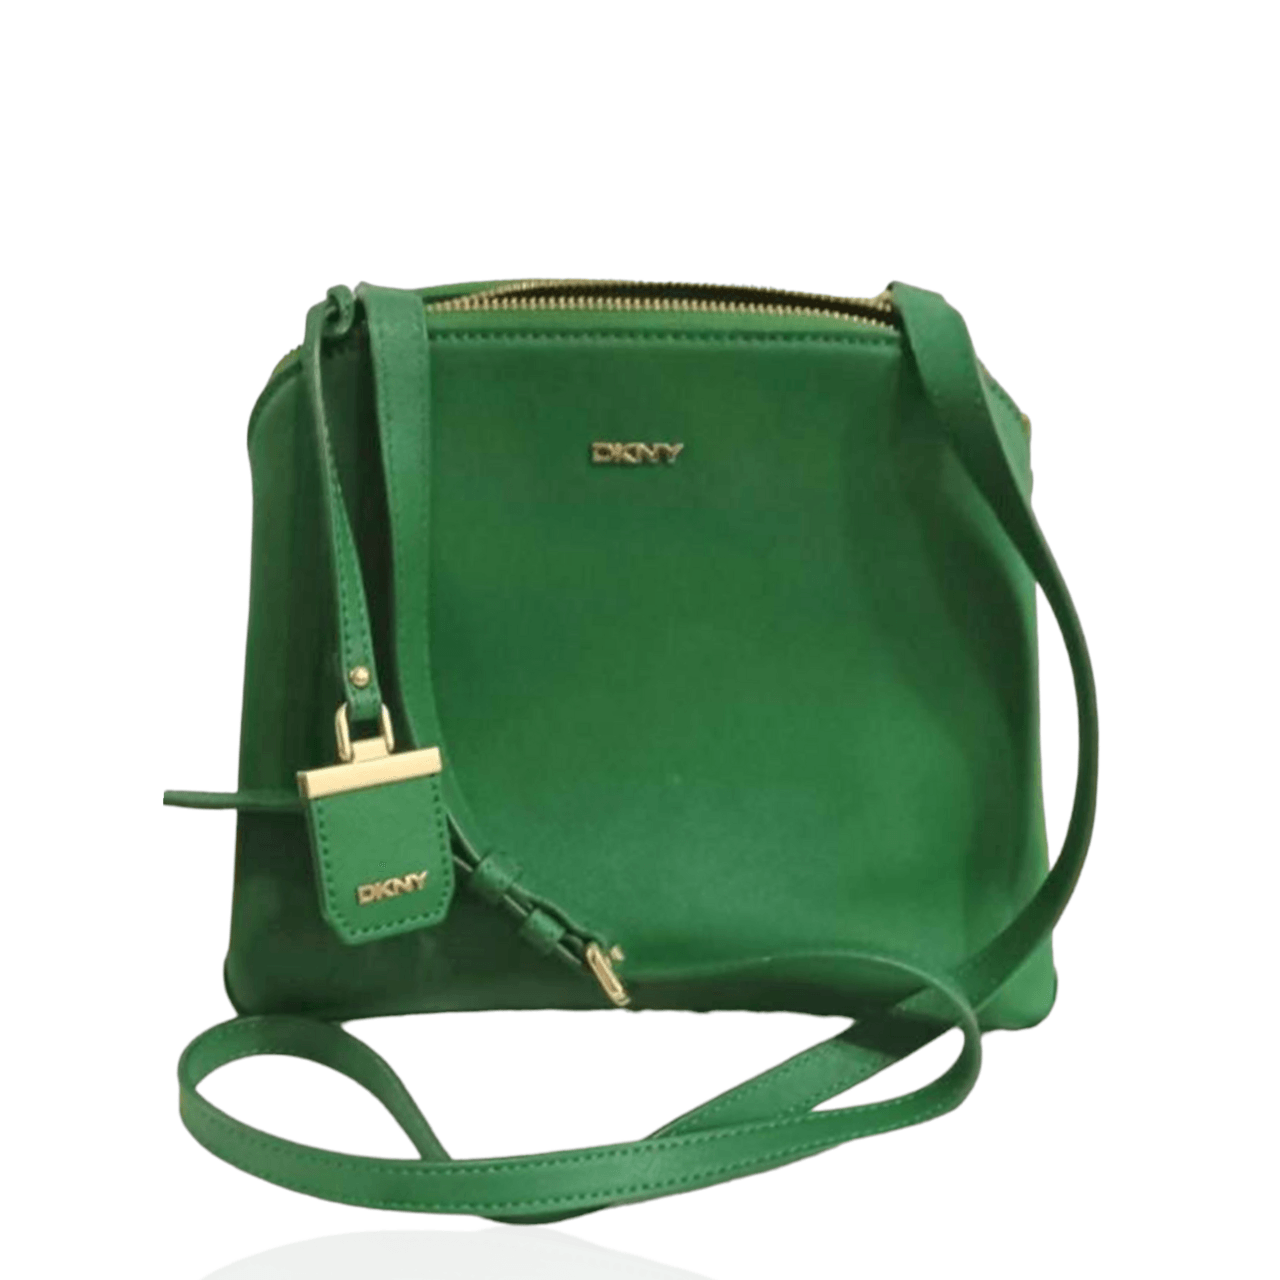 Dkny Green Sling Bag